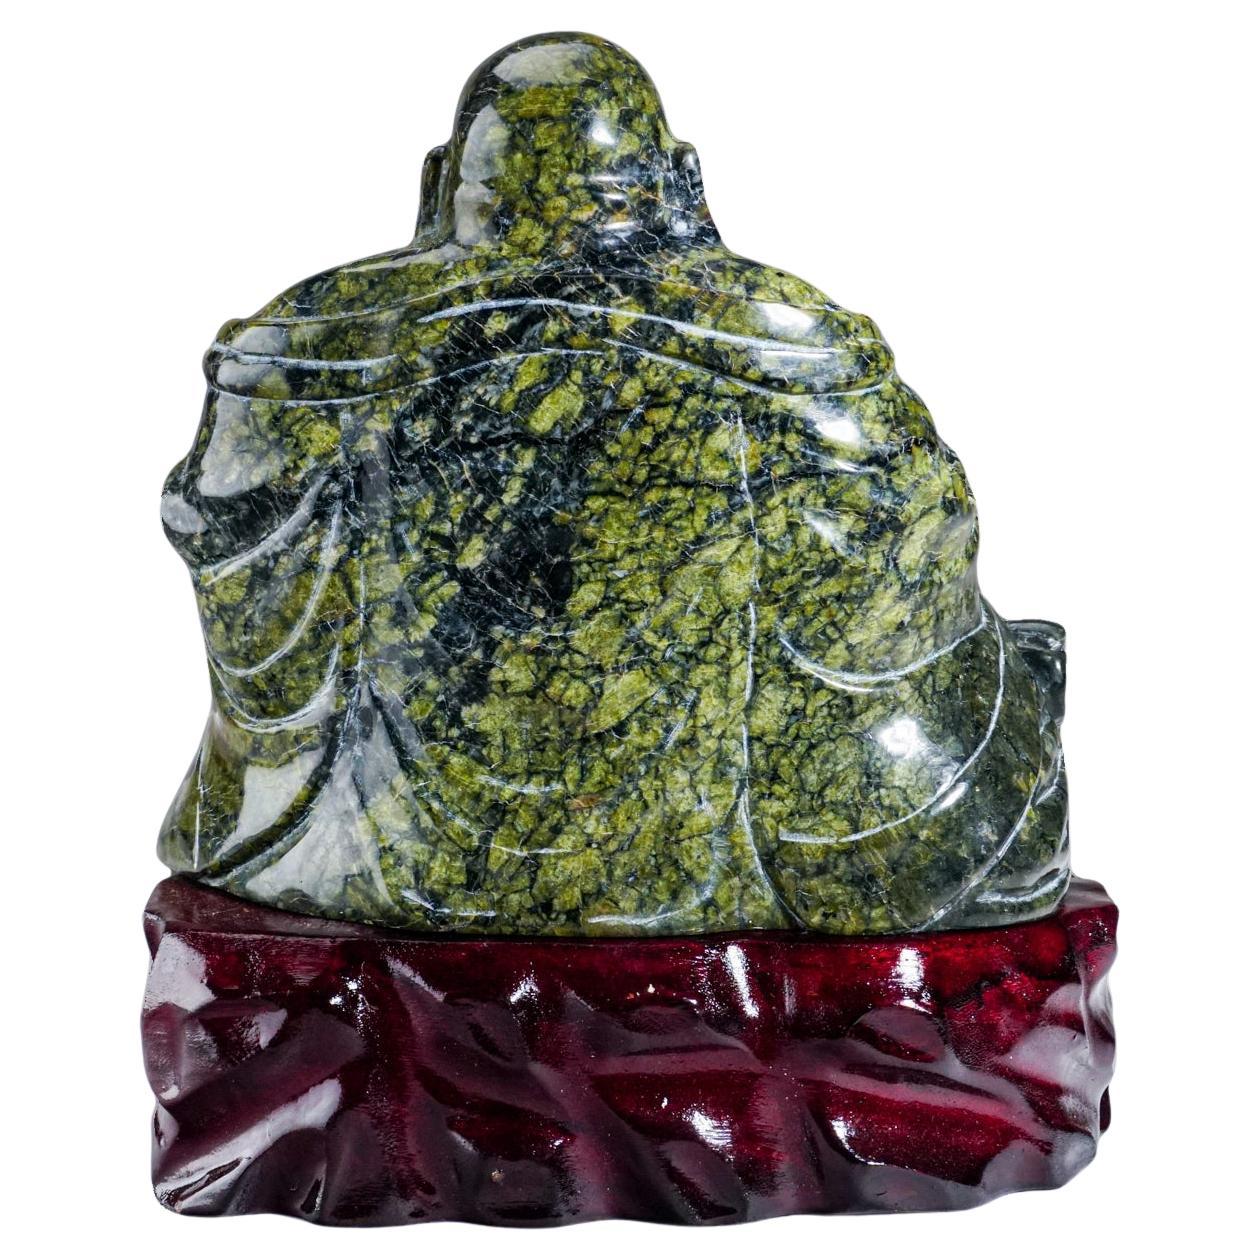 Bouddha en jade néphrite authentique, poli et sculpté à la main (7 lbs)

Grande sculpture à la main de Bouddha sur un présentoir en bois. Cette pièce est sculptée à la main à partir d'un solide morceau de jade néphrite qui est poli à la main pour